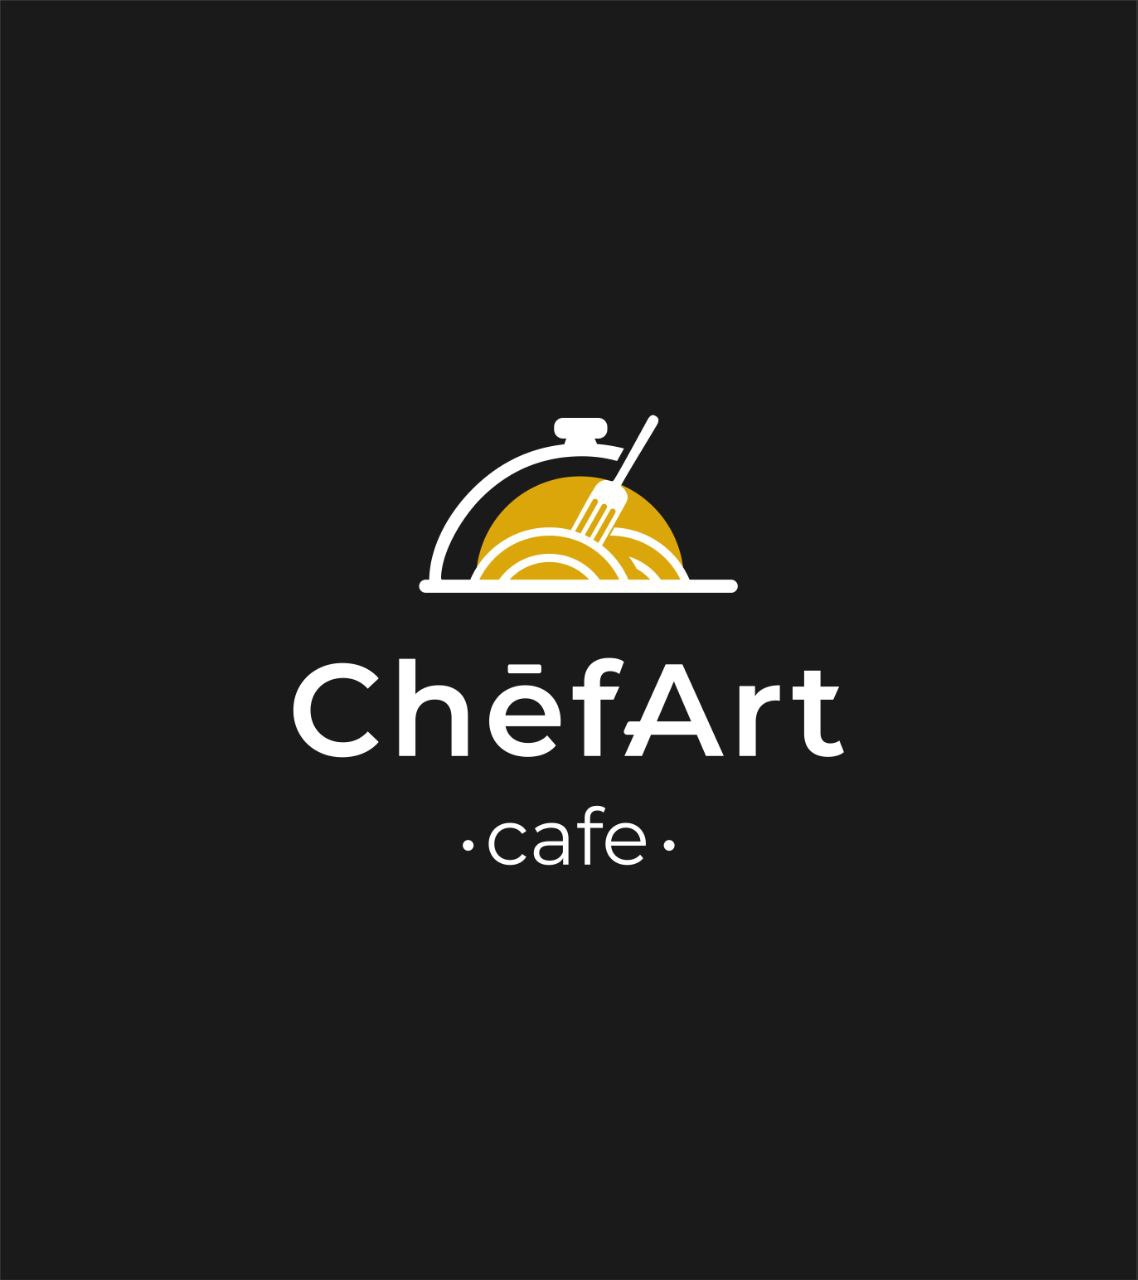 ChefArt Cafe - przytulne miejsce na śniadania, obiady i kolacje